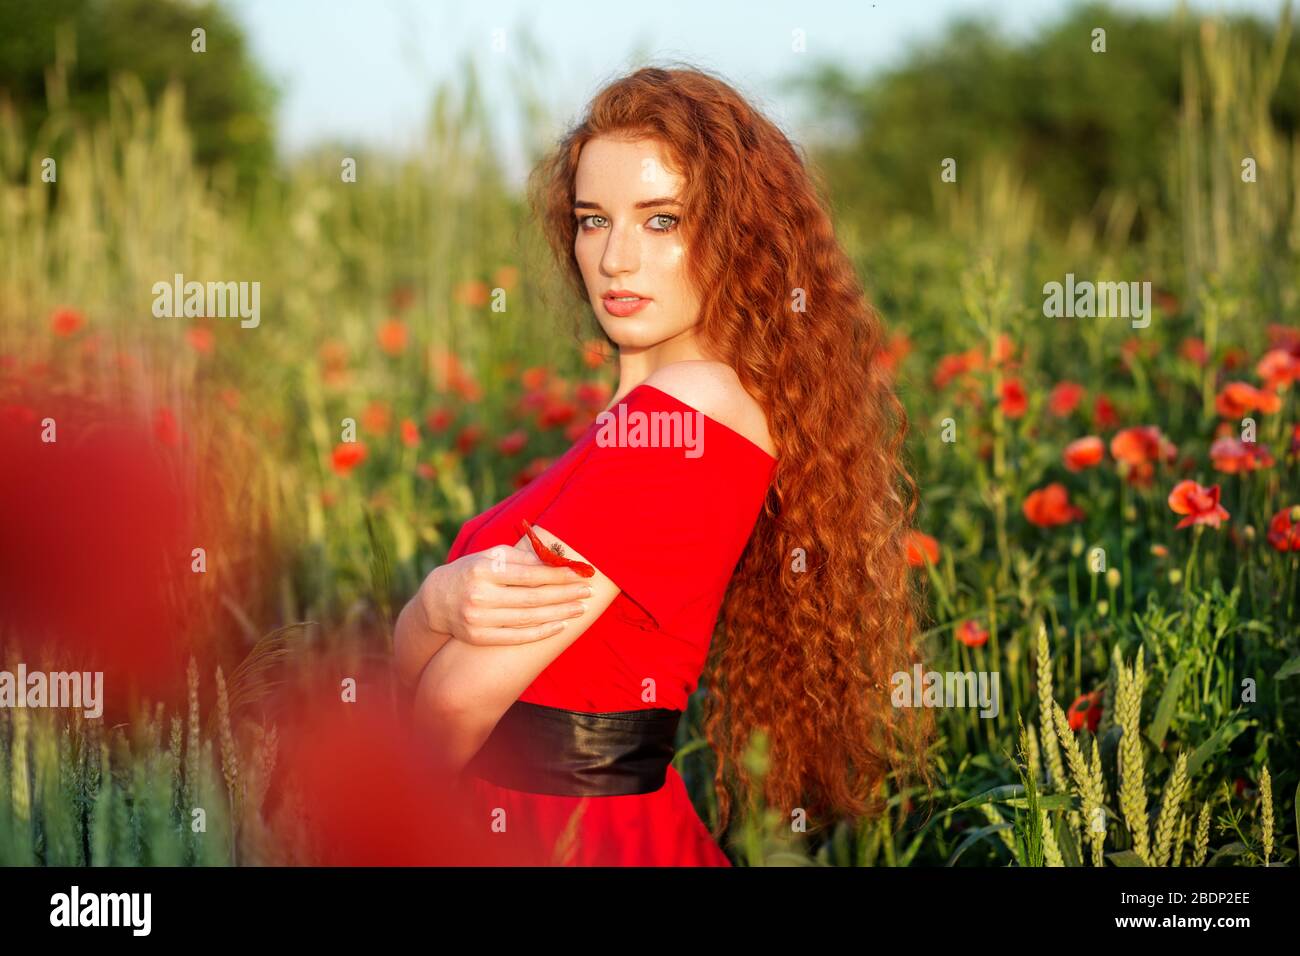 Schönes Mädchen mit sehr langen roten Haaren. Mohnfeld. Rotes Kleid.  Wunderschönes Make-up. Das Konzept von Gesundheit, Natur, Kosmetik und  Pflege Stockfotografie - Alamy